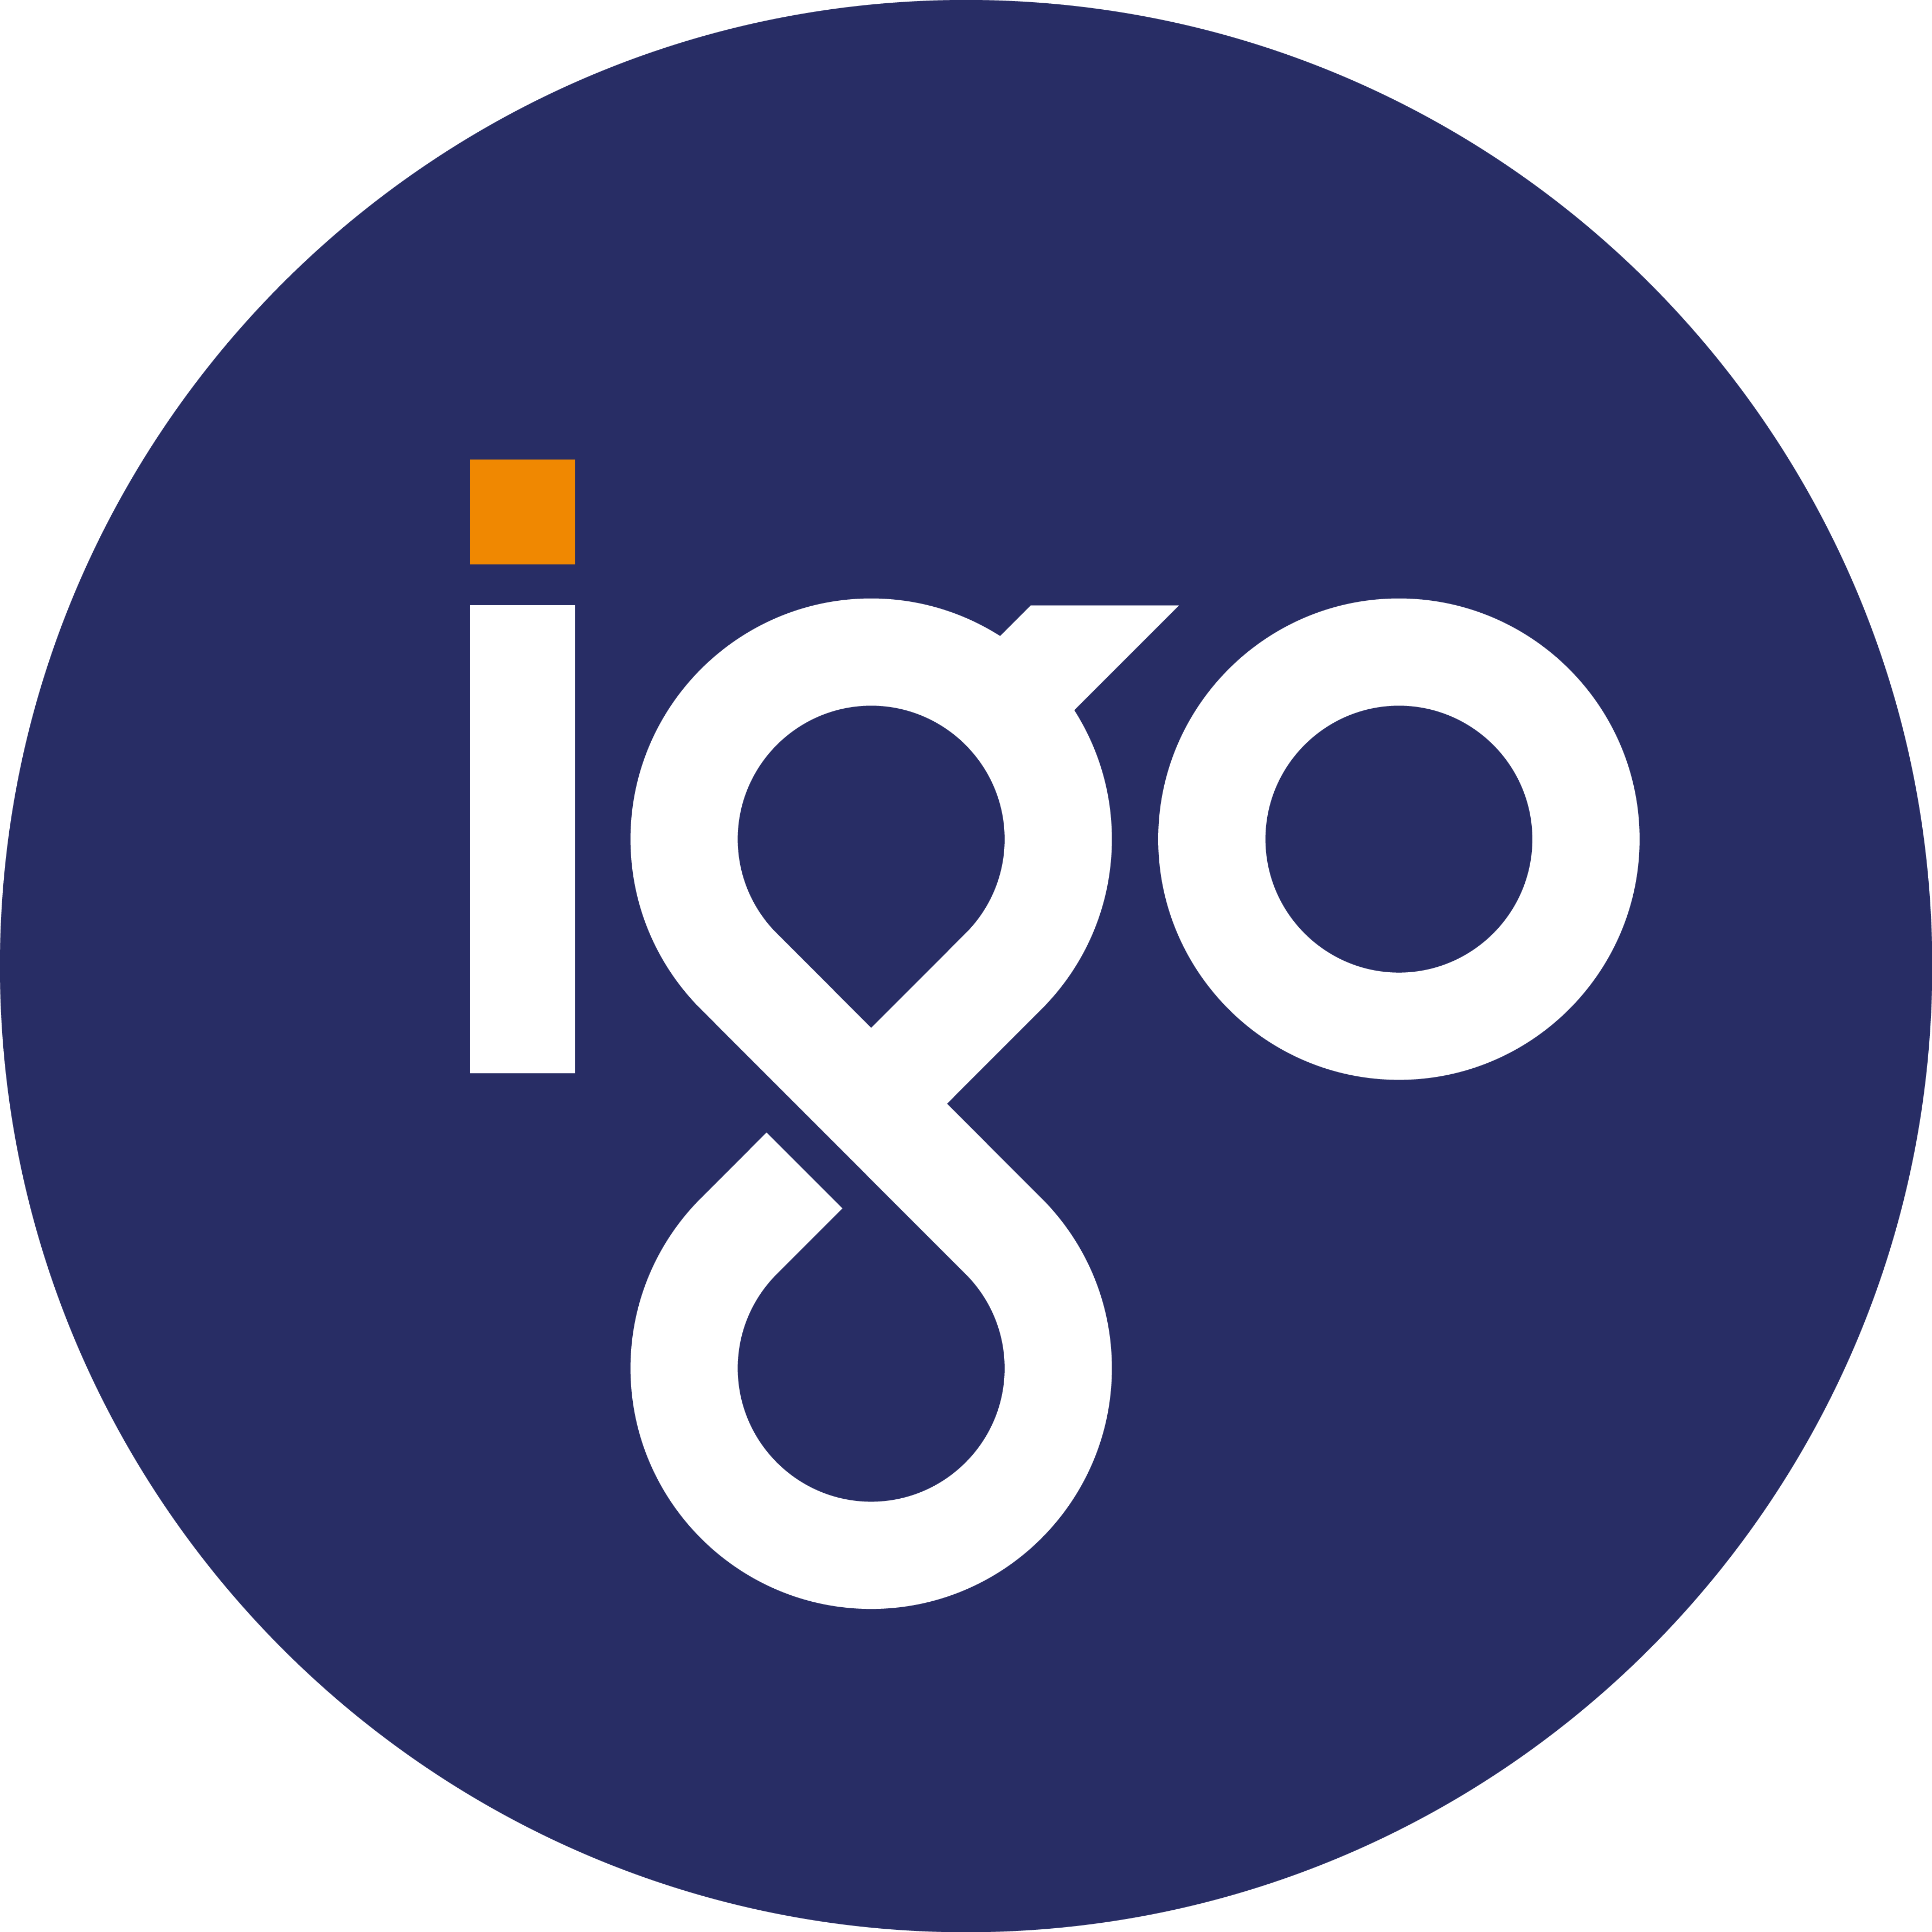 Igo Logo - INDEPENDENCE GROUP NL (IGO) Share Price & Information